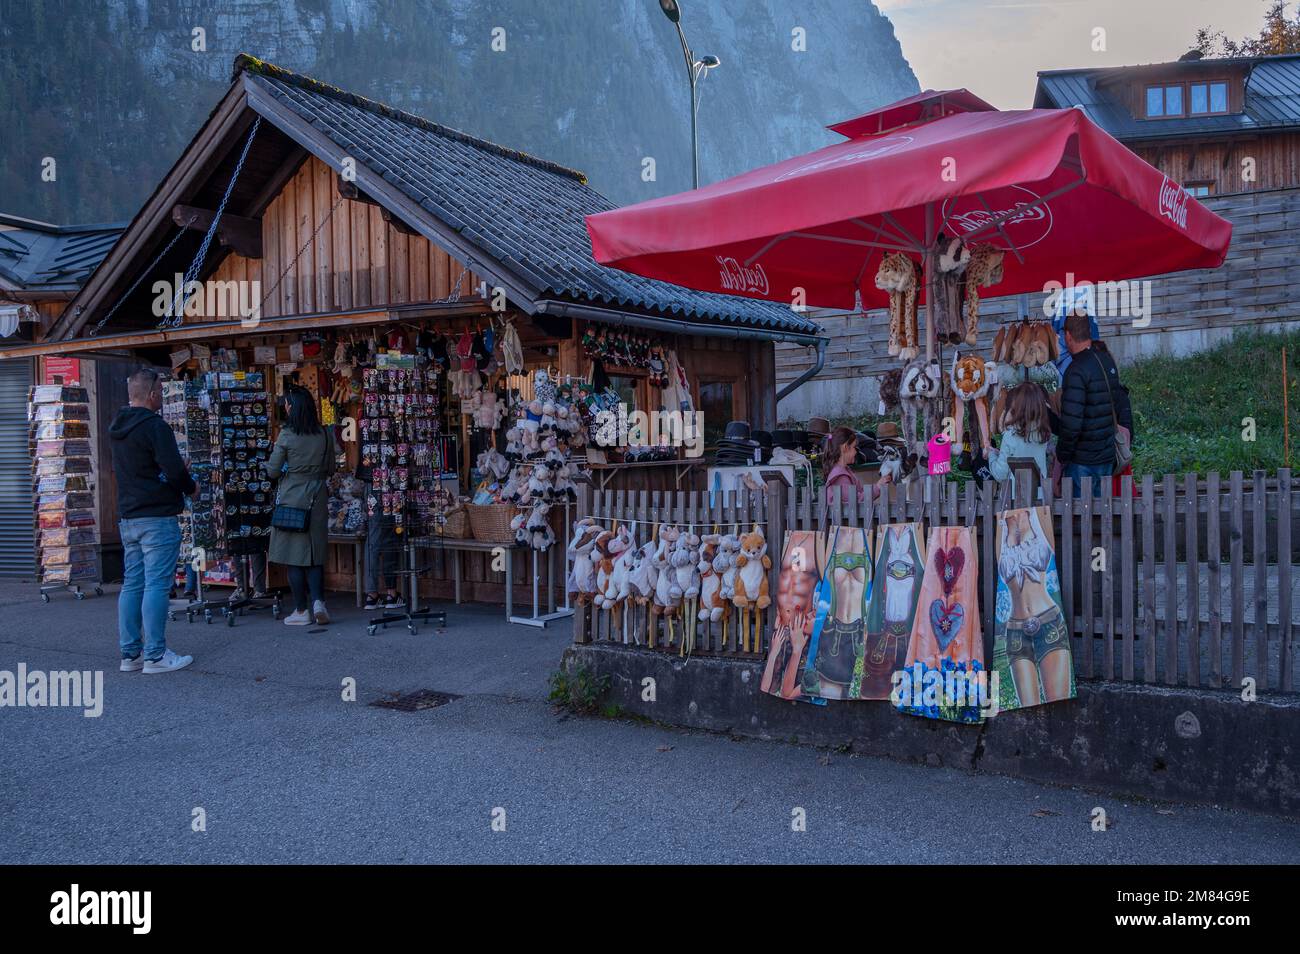 Vue sur une boutique de souvenirs dans les rues vendant des vêtements d'hiver, des aimants colorés, des jouets en peluche et des objets de collection capturés à Hallstatt, en Autriche. Banque D'Images